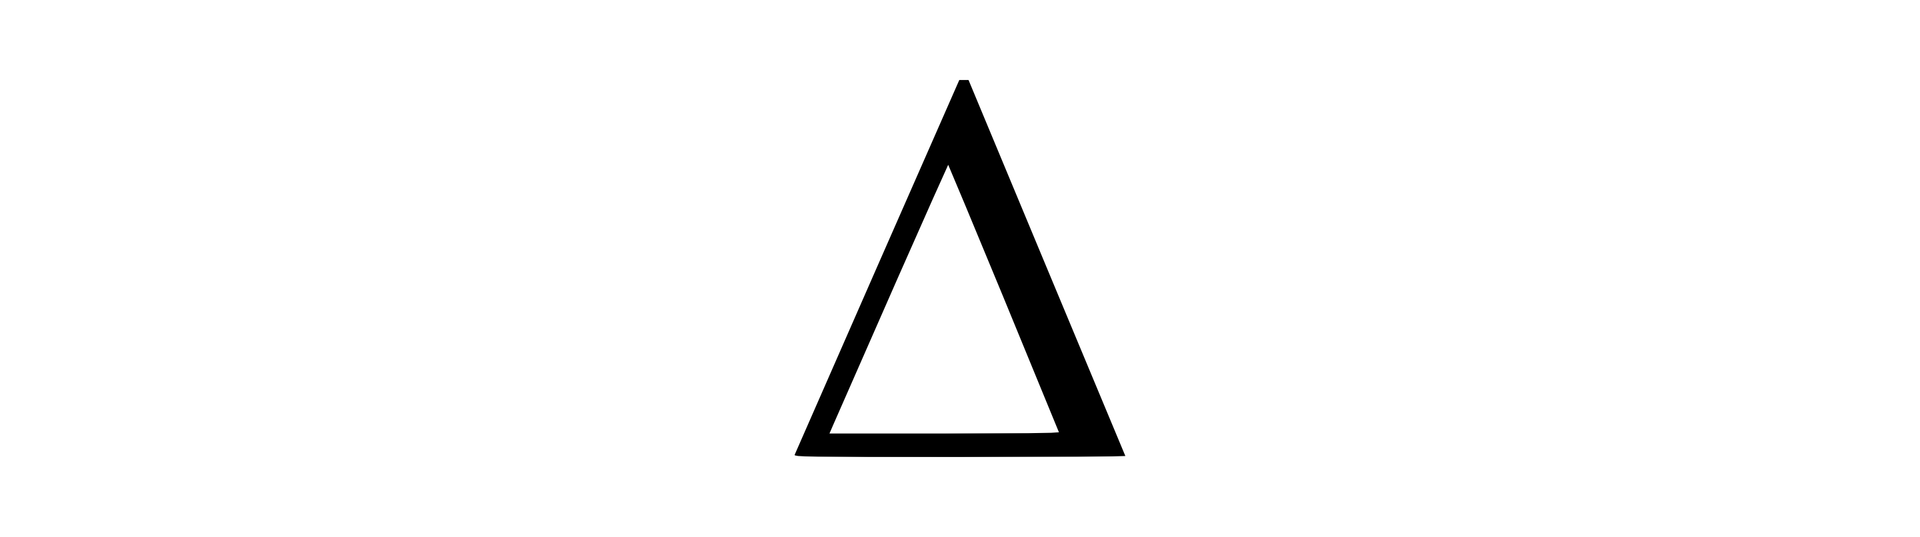 Ilustracja przedstawia symbol greckiej litery ∆ delta. Tło białe. Na środku duży trójkąt. Kontury czarne, wnętrze białe. Trójkąt równoramienny. Kontur prawego ramienia grubszy niż pozostałych boków.